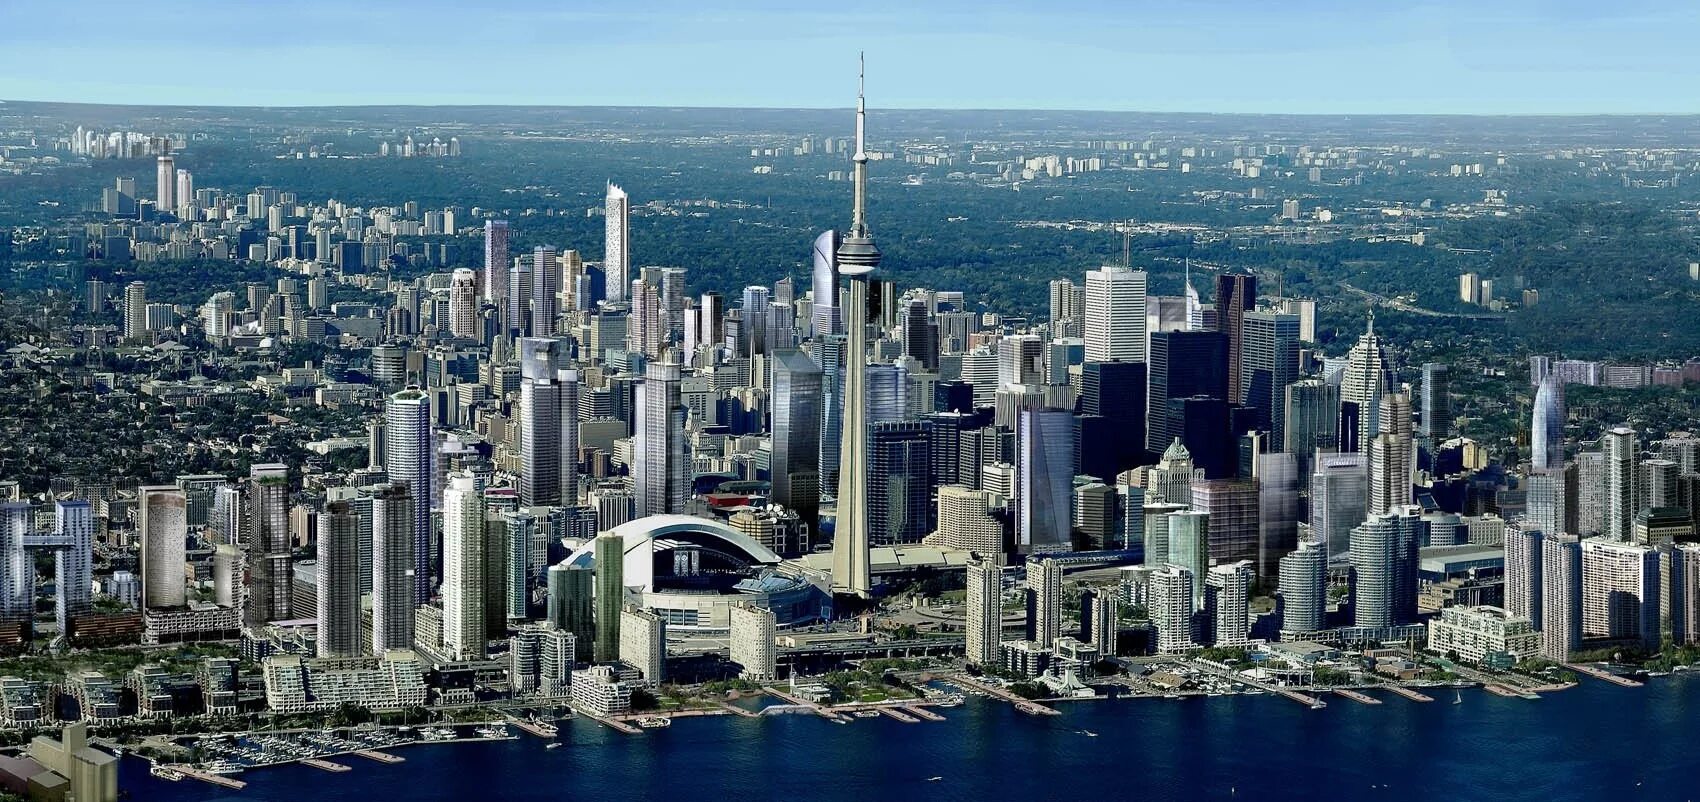 Крупнейший по населению город канады. Канада столица Торонто. Торонто Канада достопримечательности. Канада небоскребы Торонто. Торонто 1990.